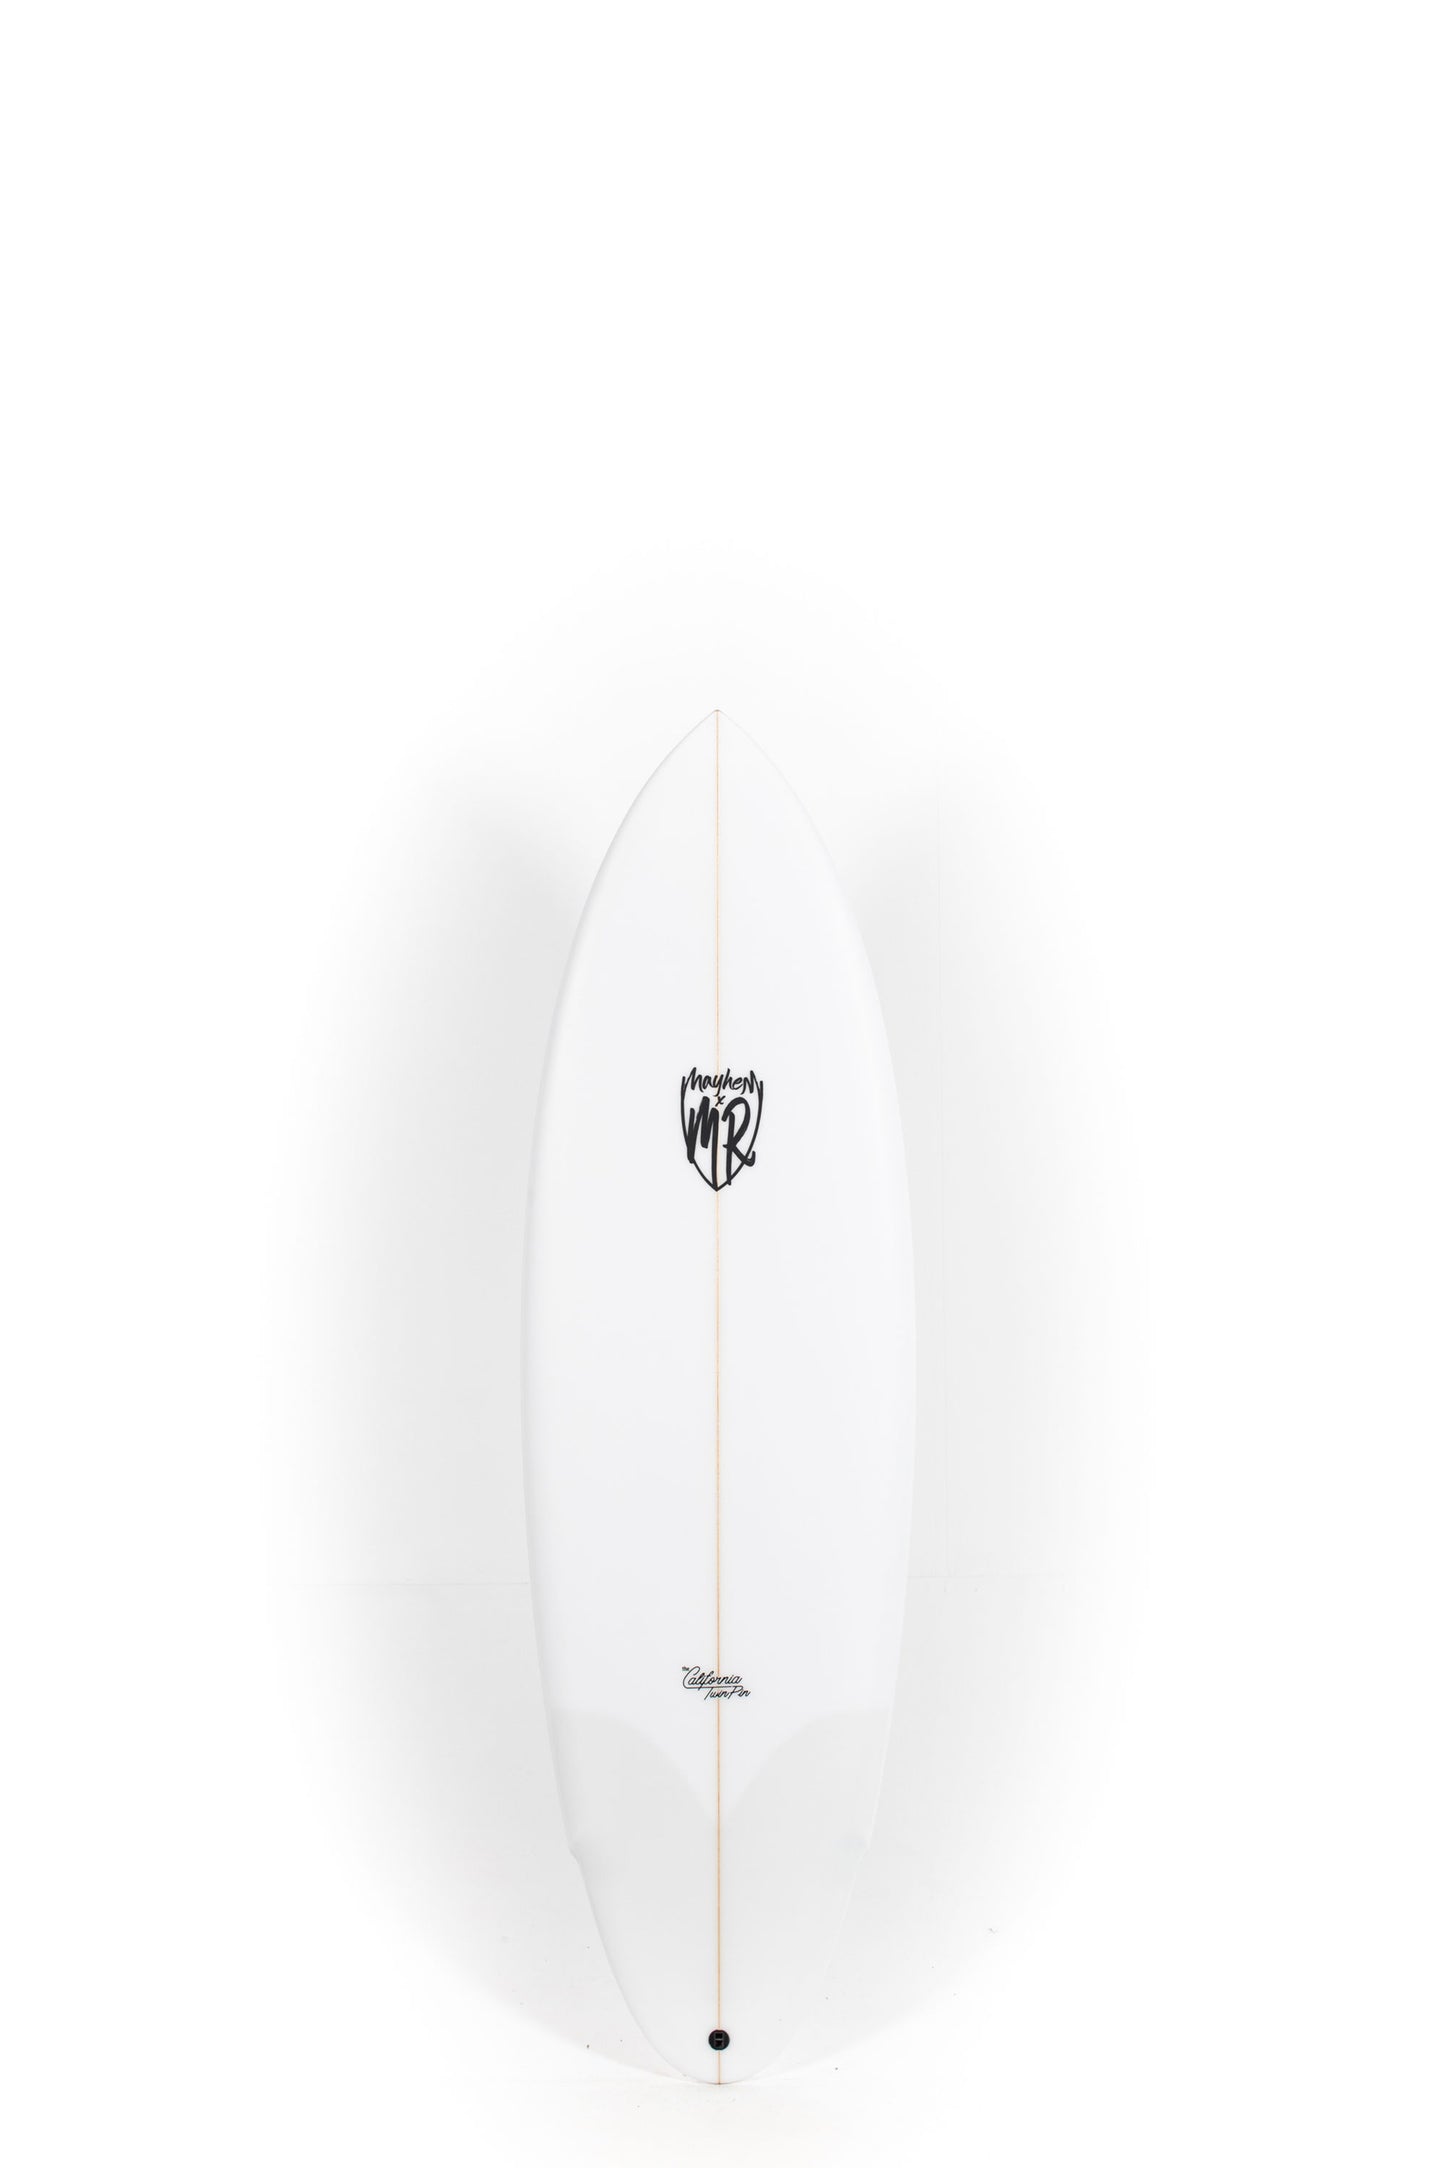 Pukas Surf Shop - Lost Surfboards - CALIFORNIA TWIN PIN by Matt Biolos - 5'11" x 20,75 x 2,61 x 34,81L - MM00653